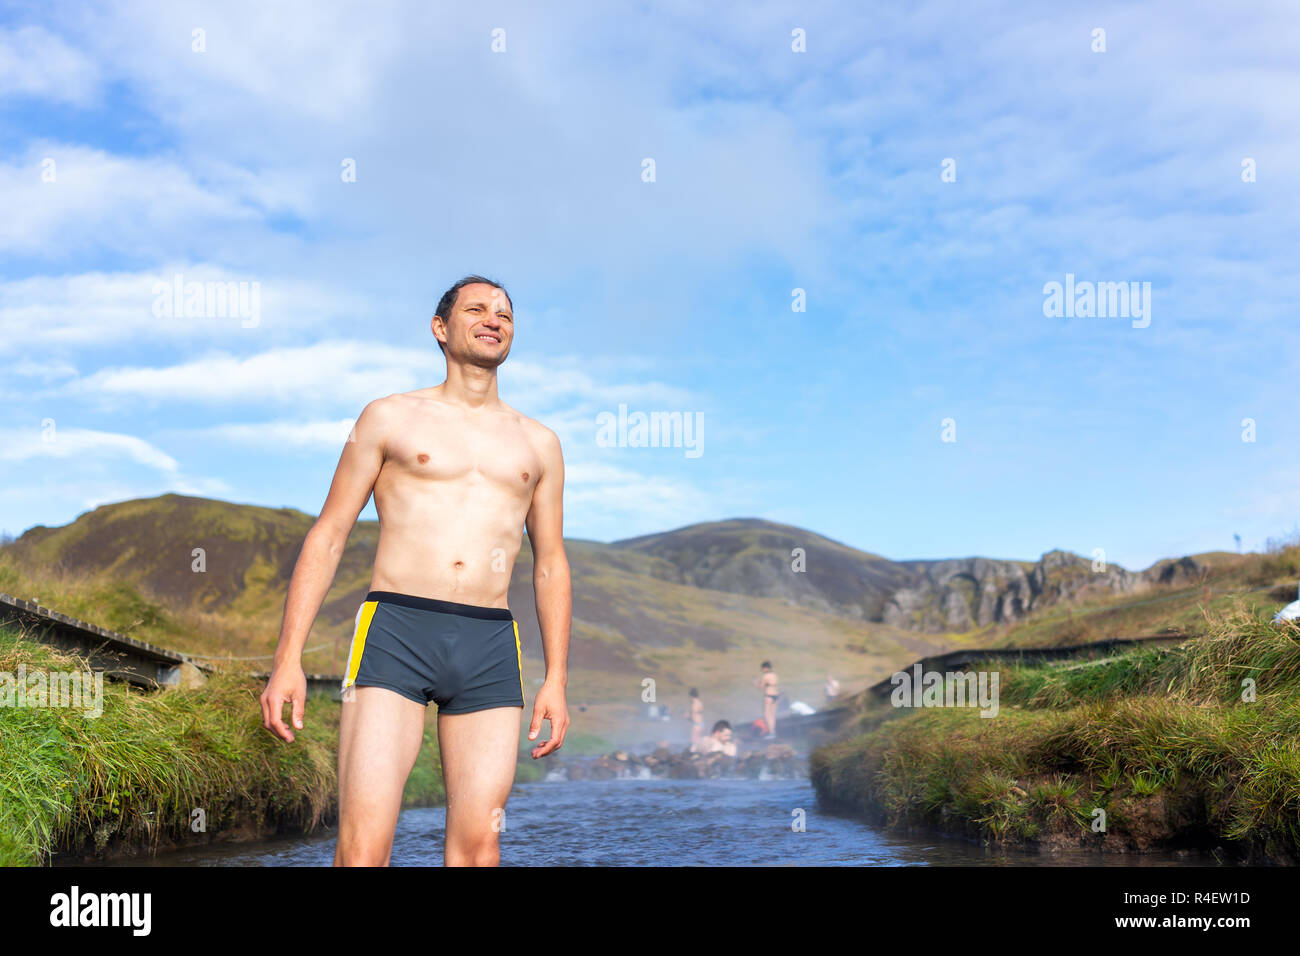 Junge glücklich Mann schwimmen Baden in heißen Quellen in Hveragerdi Reykjadalur im Süden Islands, golden circle, Felsen und Fluss Dampf, lächelnd Stockfoto